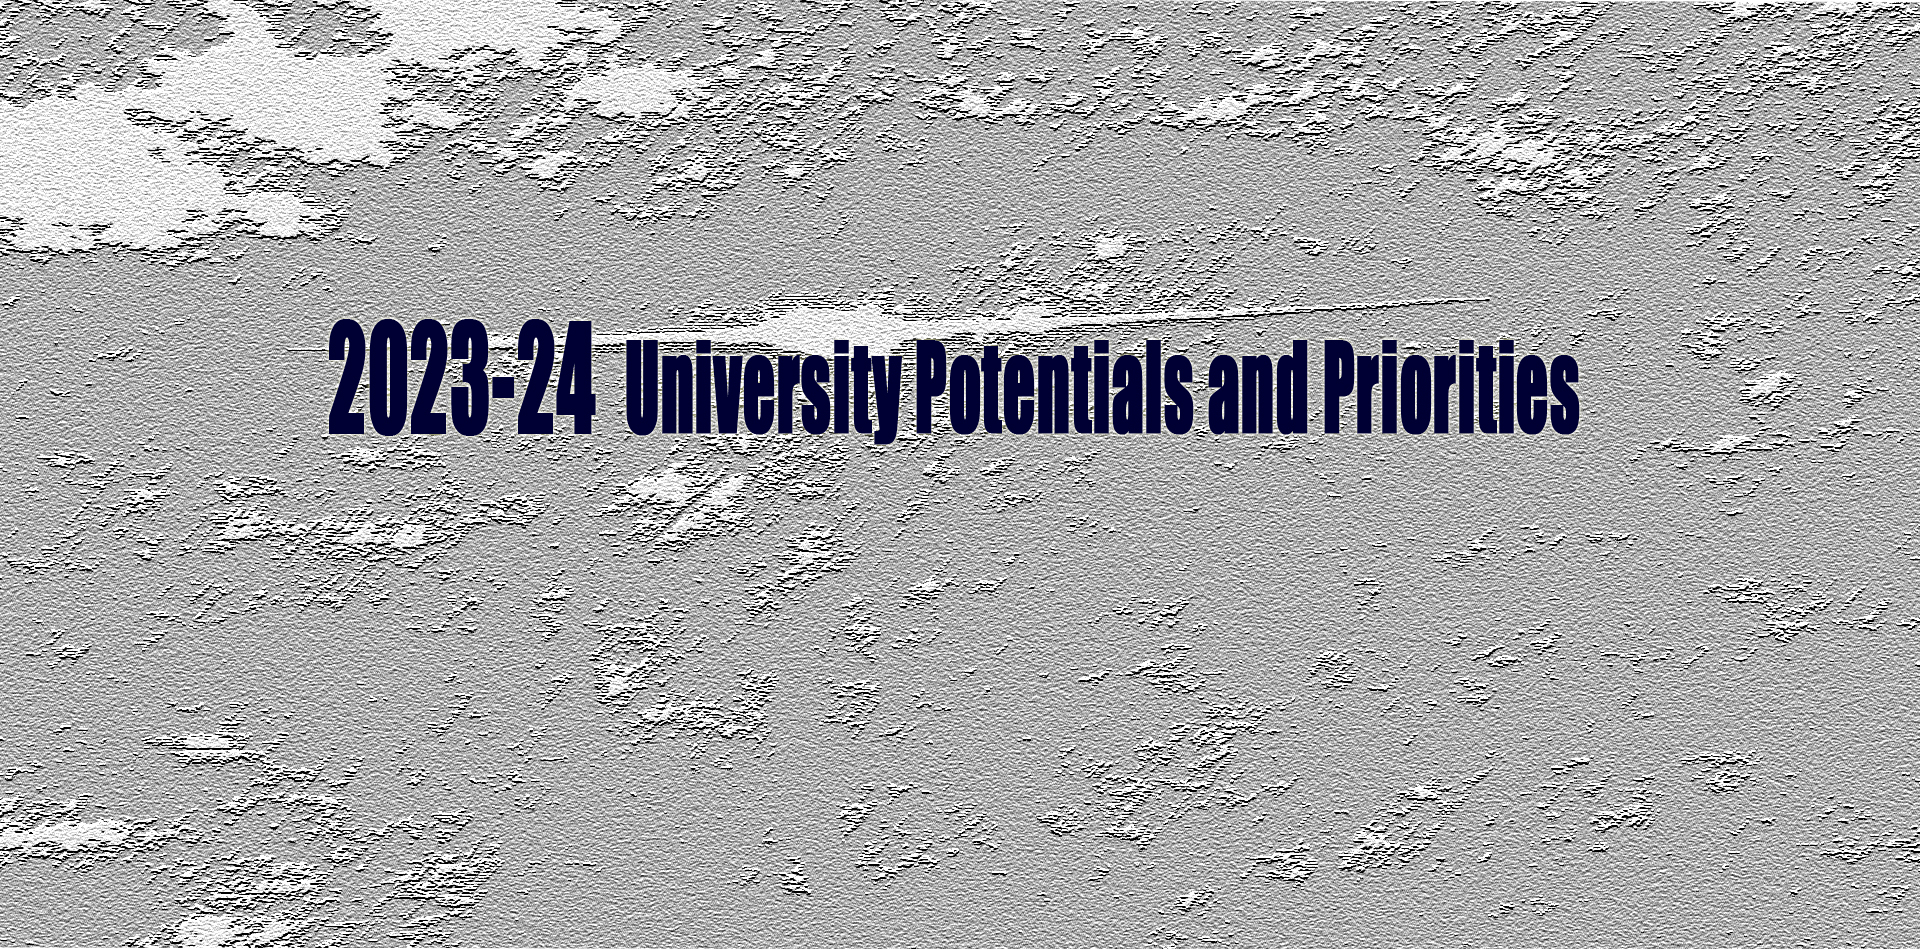 2023-24UniversityPotentials&Priorities